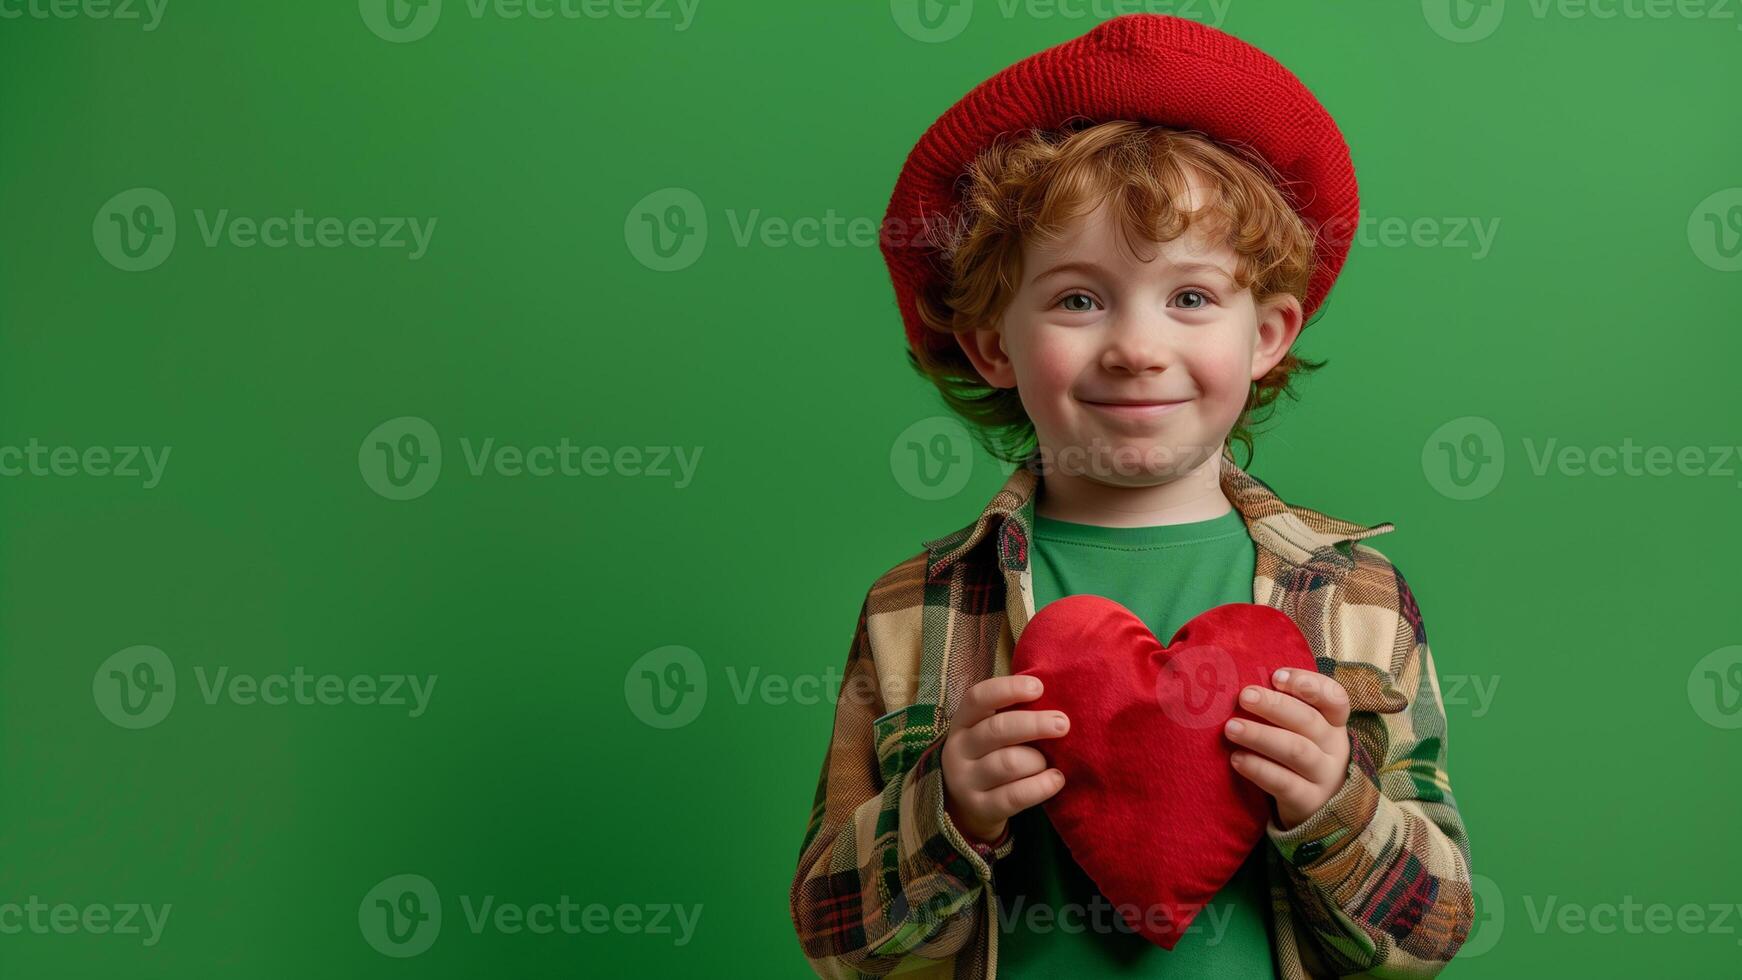 rödhårig pojke med en röd hjärta i hans händer på en grön bakgrund foto